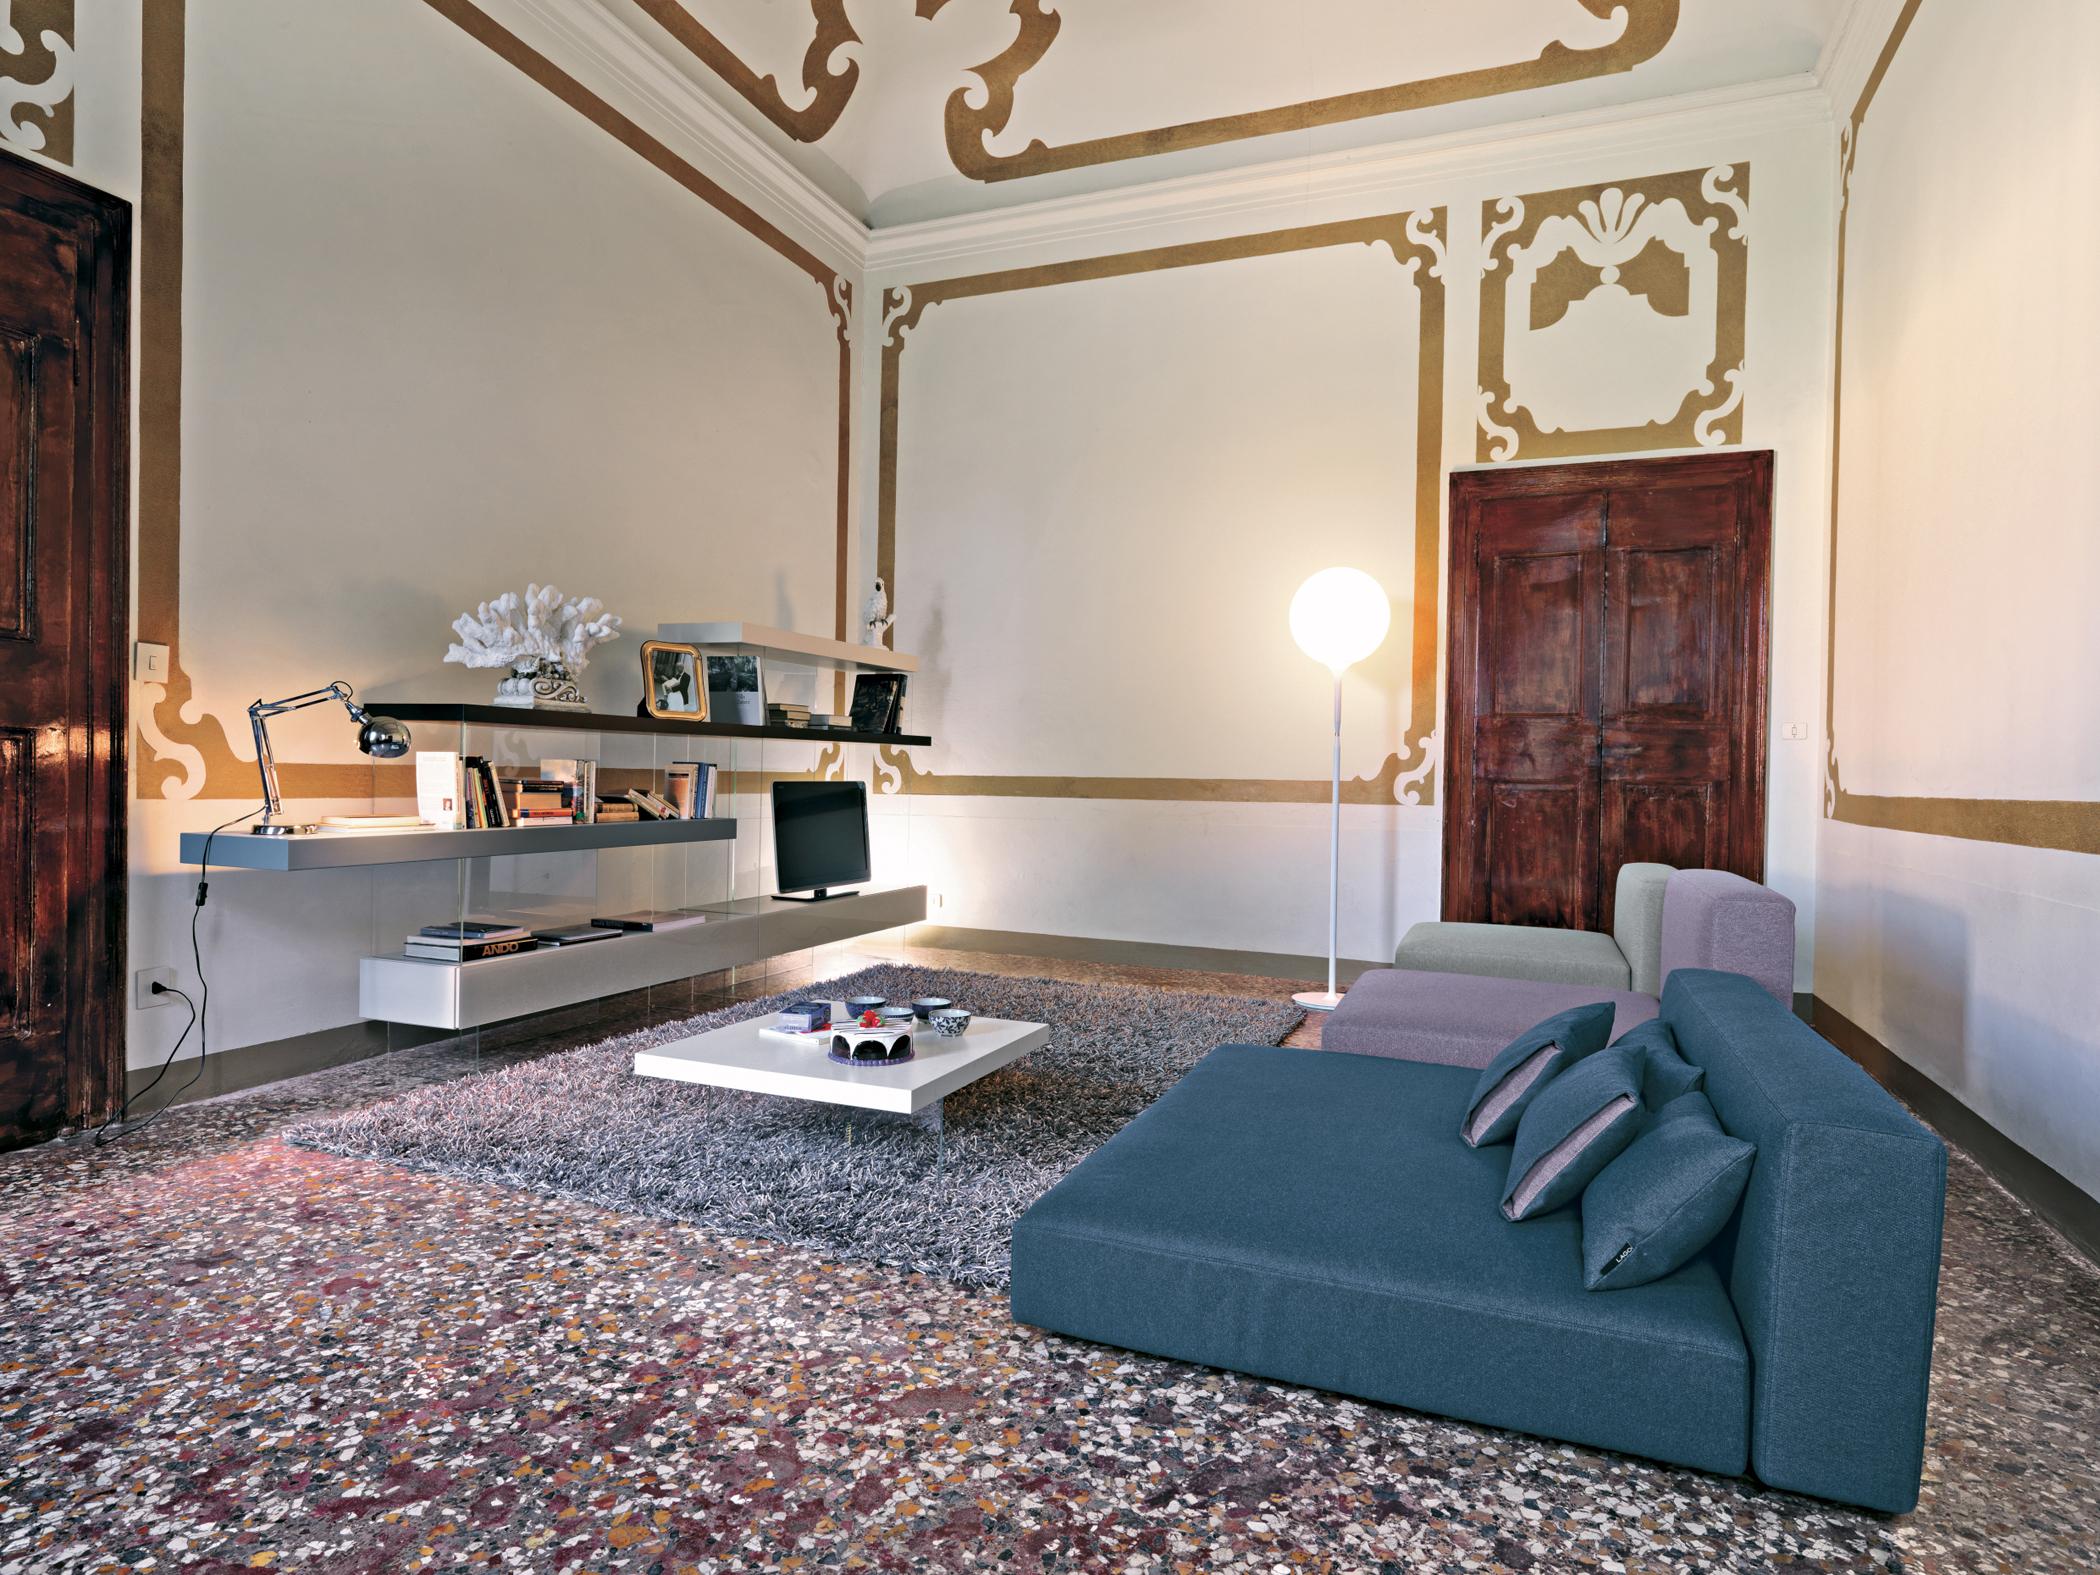 Sofa-Liegewiese #couchtisch #wandregal #regalsystem #wandgestaltung #liegewiese ©Lago